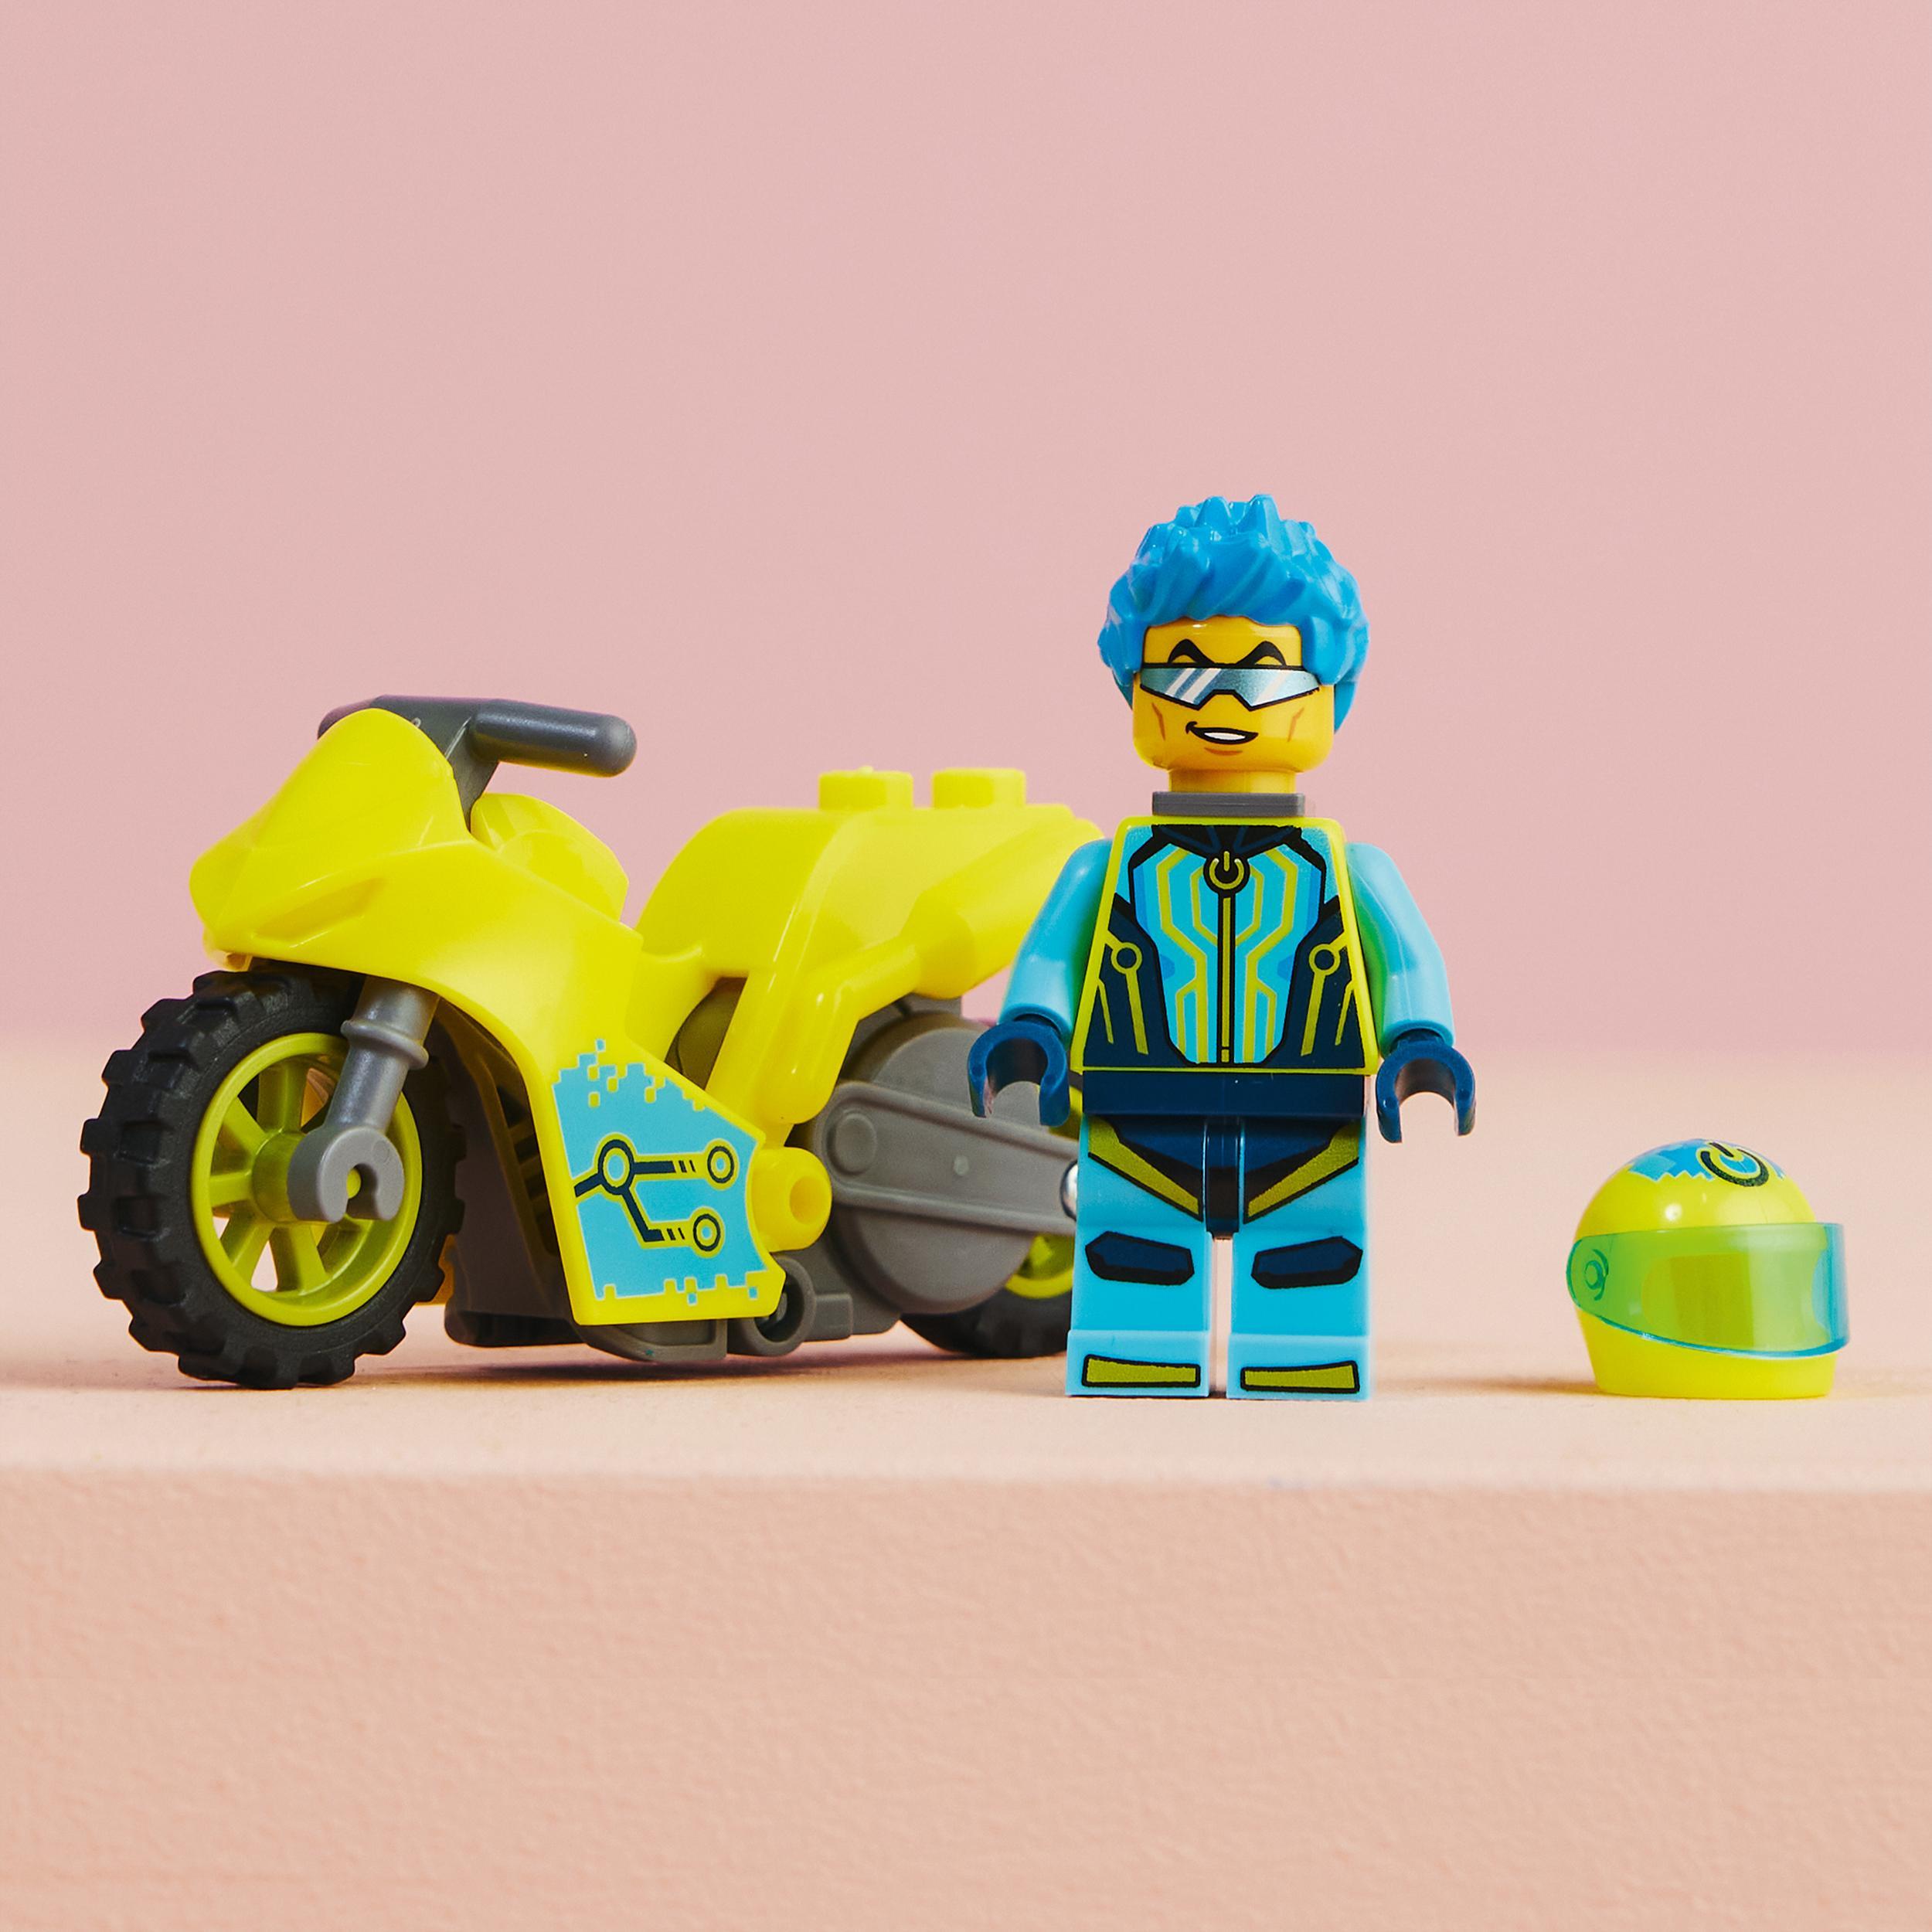 Lego city stuntz 60358 cyber stunt bike, moto giocattolo carica e vai per salti e acrobazie, giochi per bambini dai 5 anni - LEGO CITY